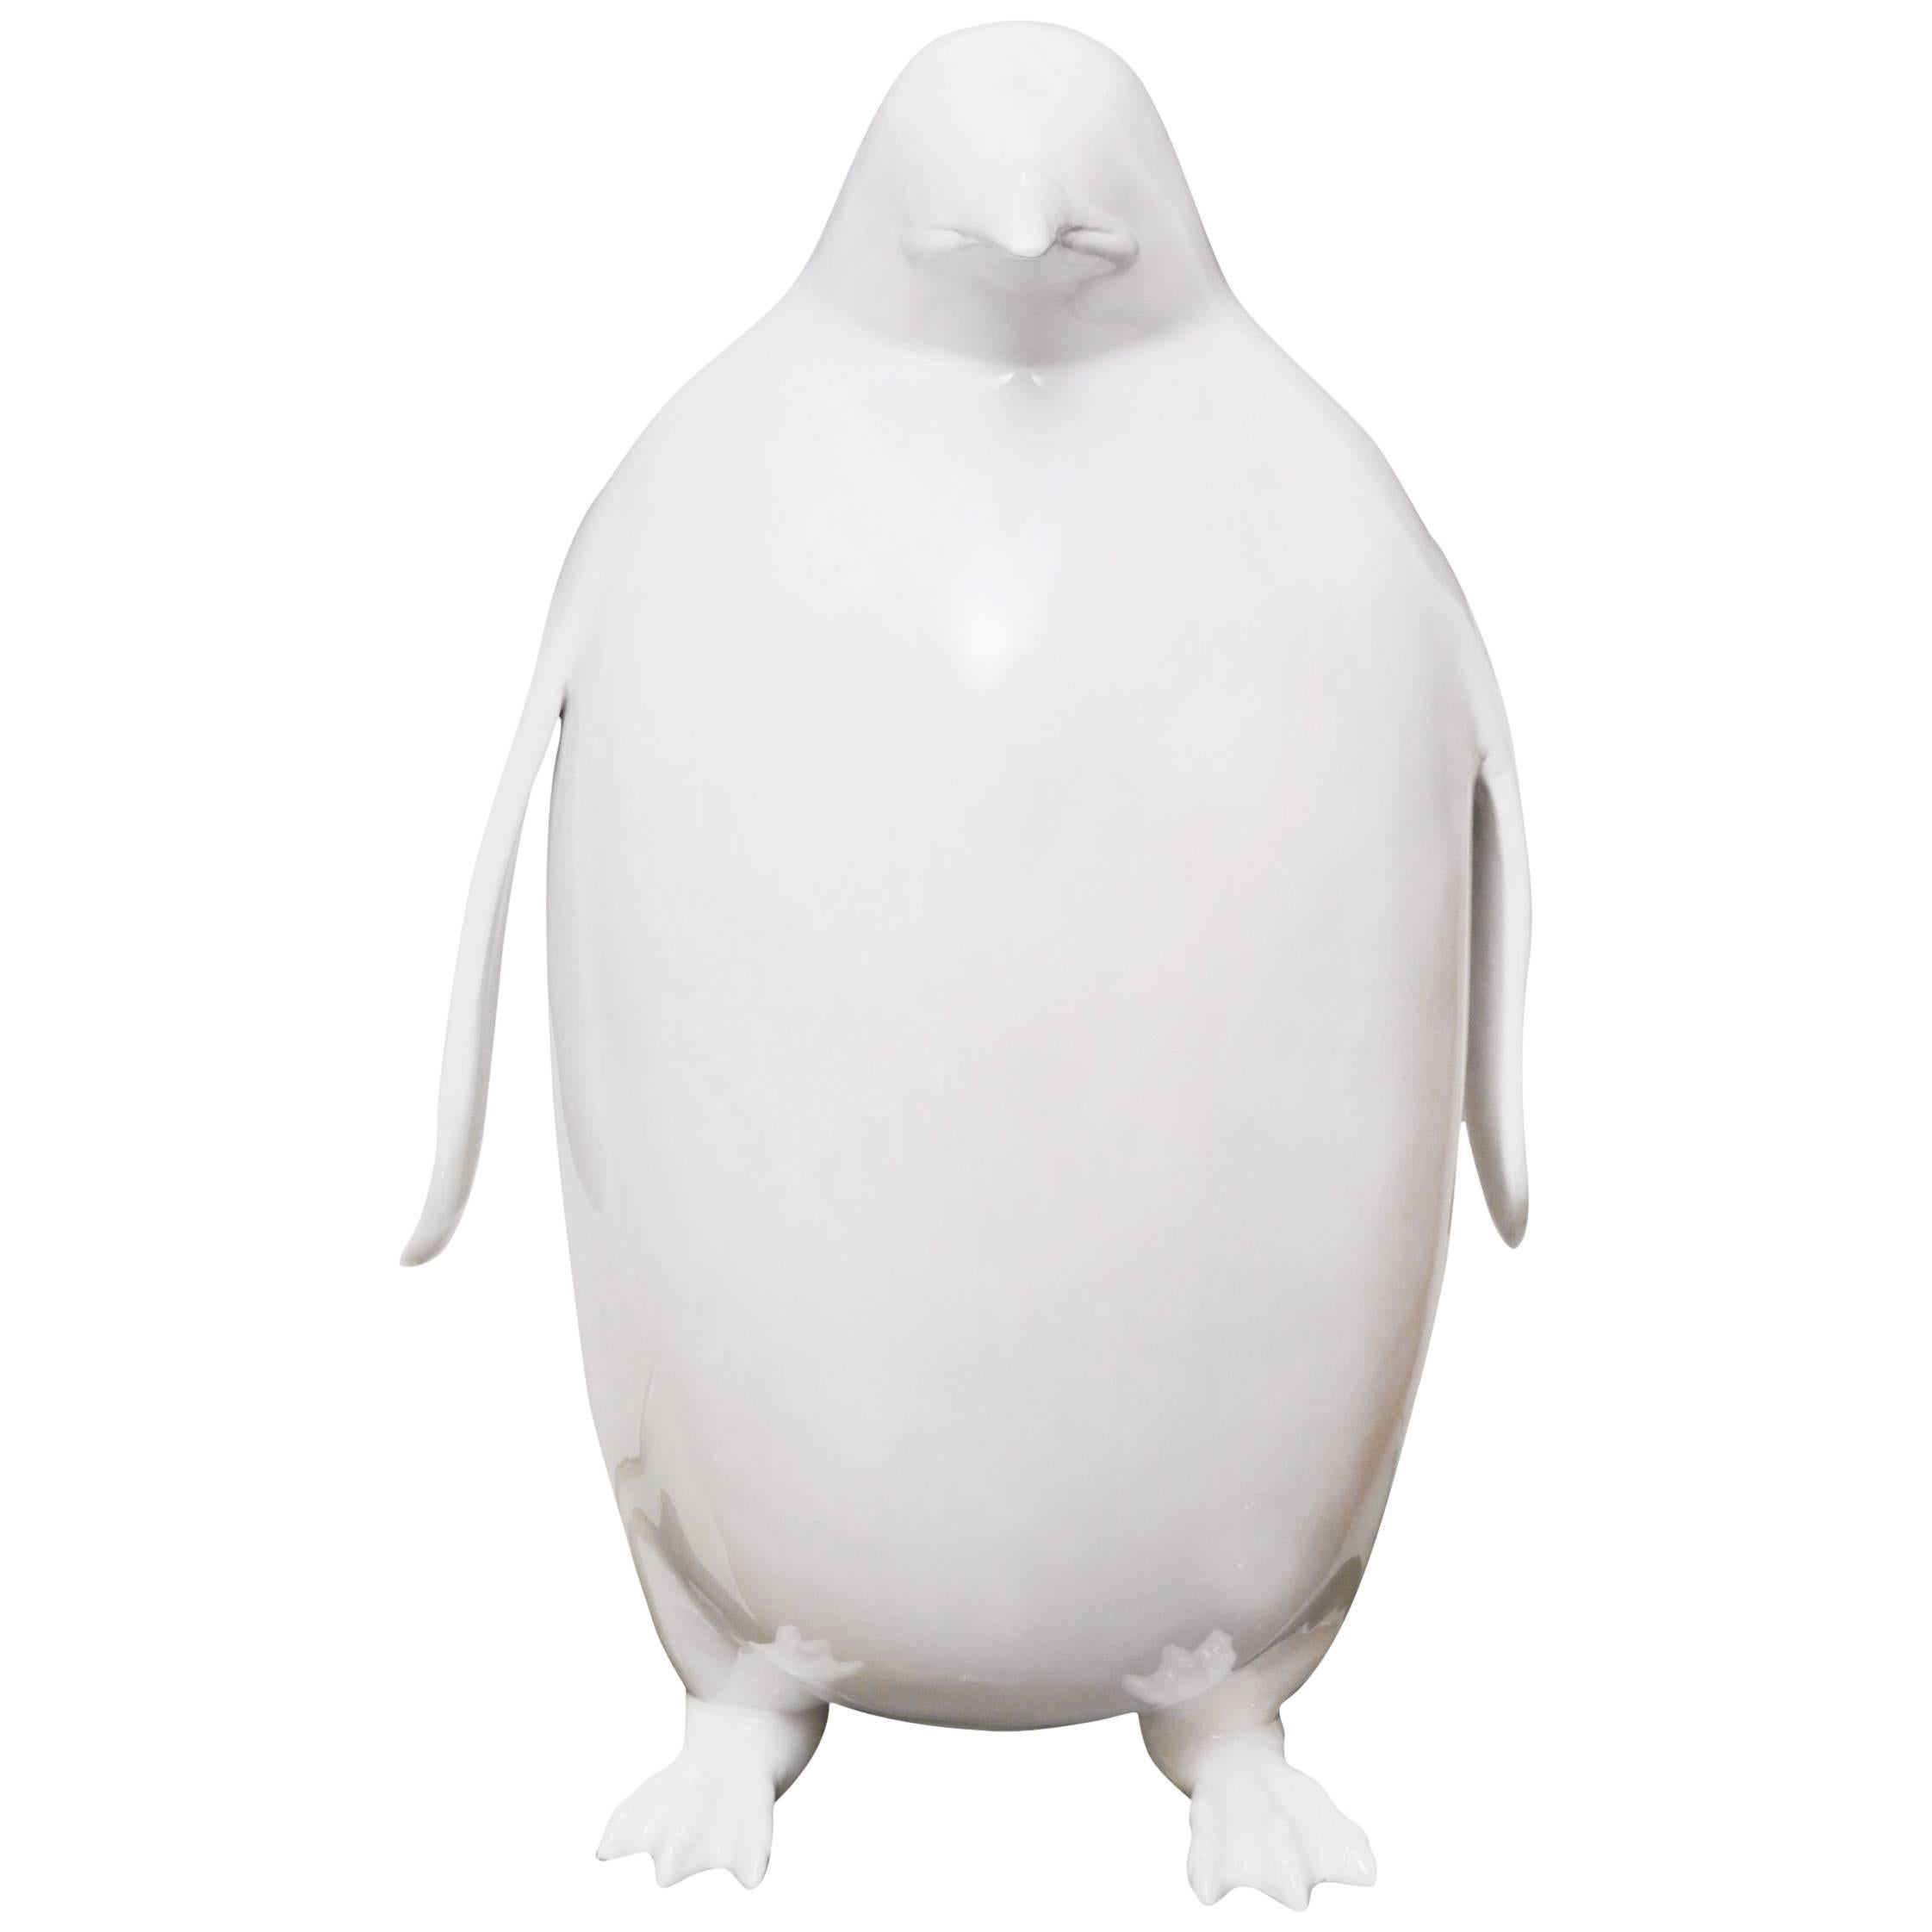 house party penguin sculpture